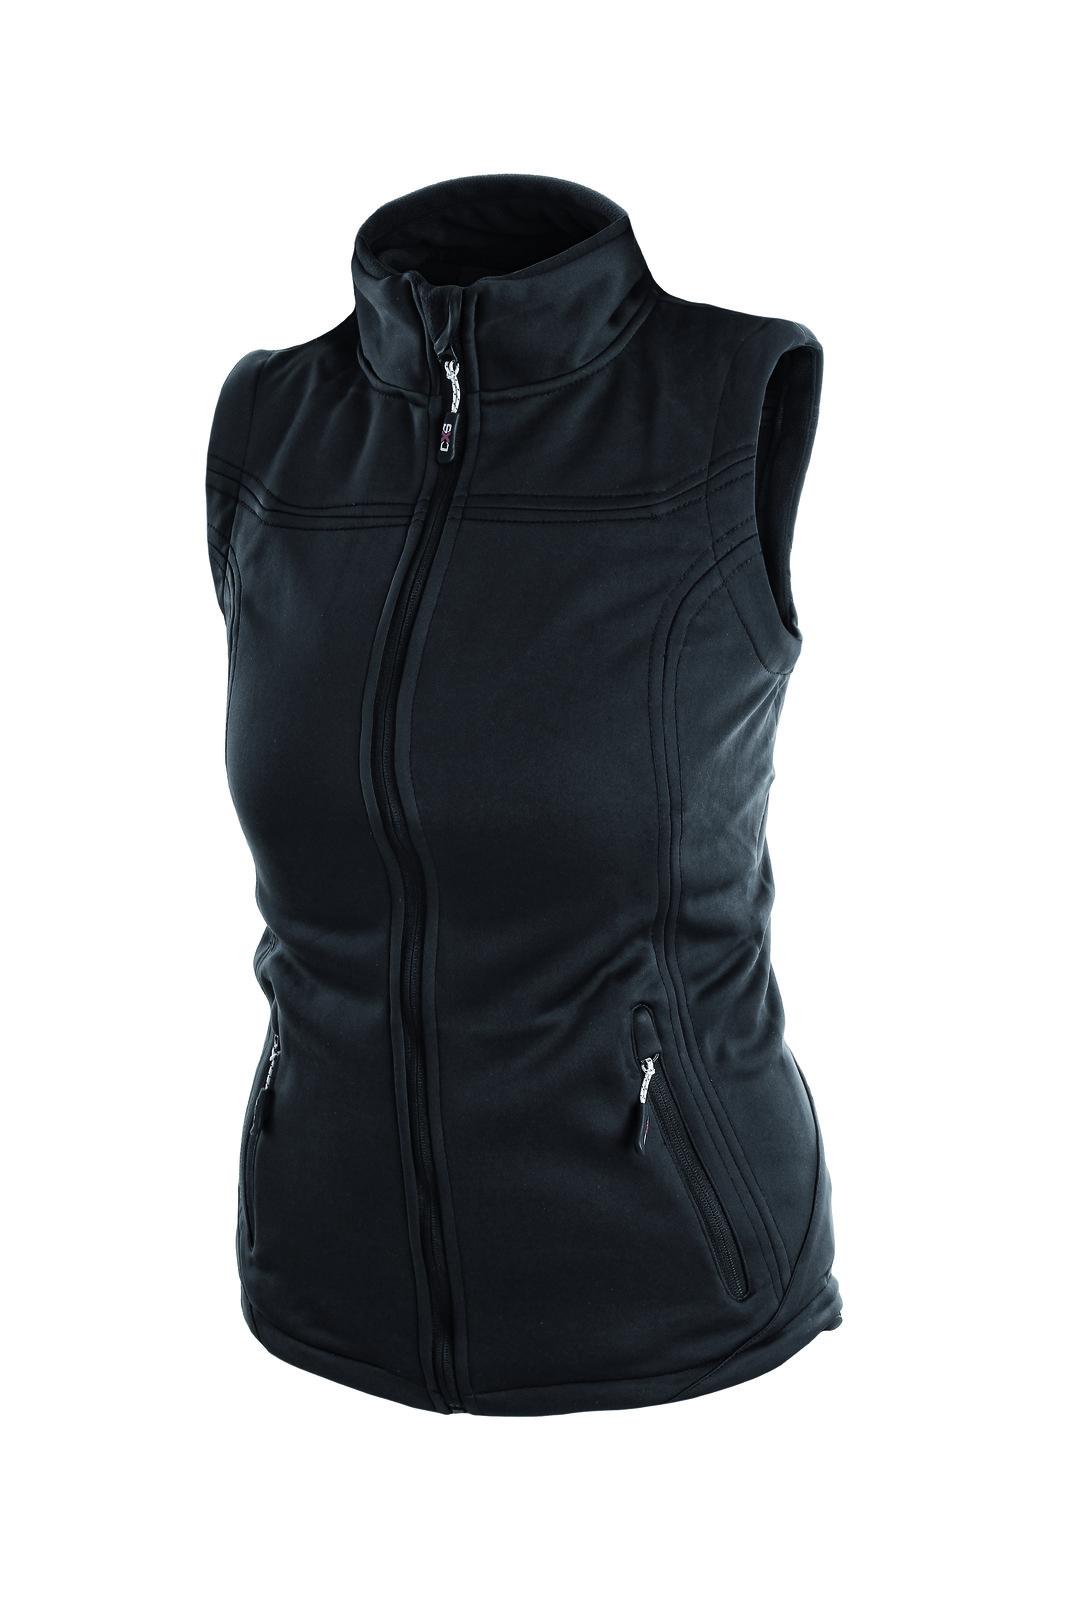 Ľahká dámska vesta Laredo - veľkosť: XL, farba: čierna